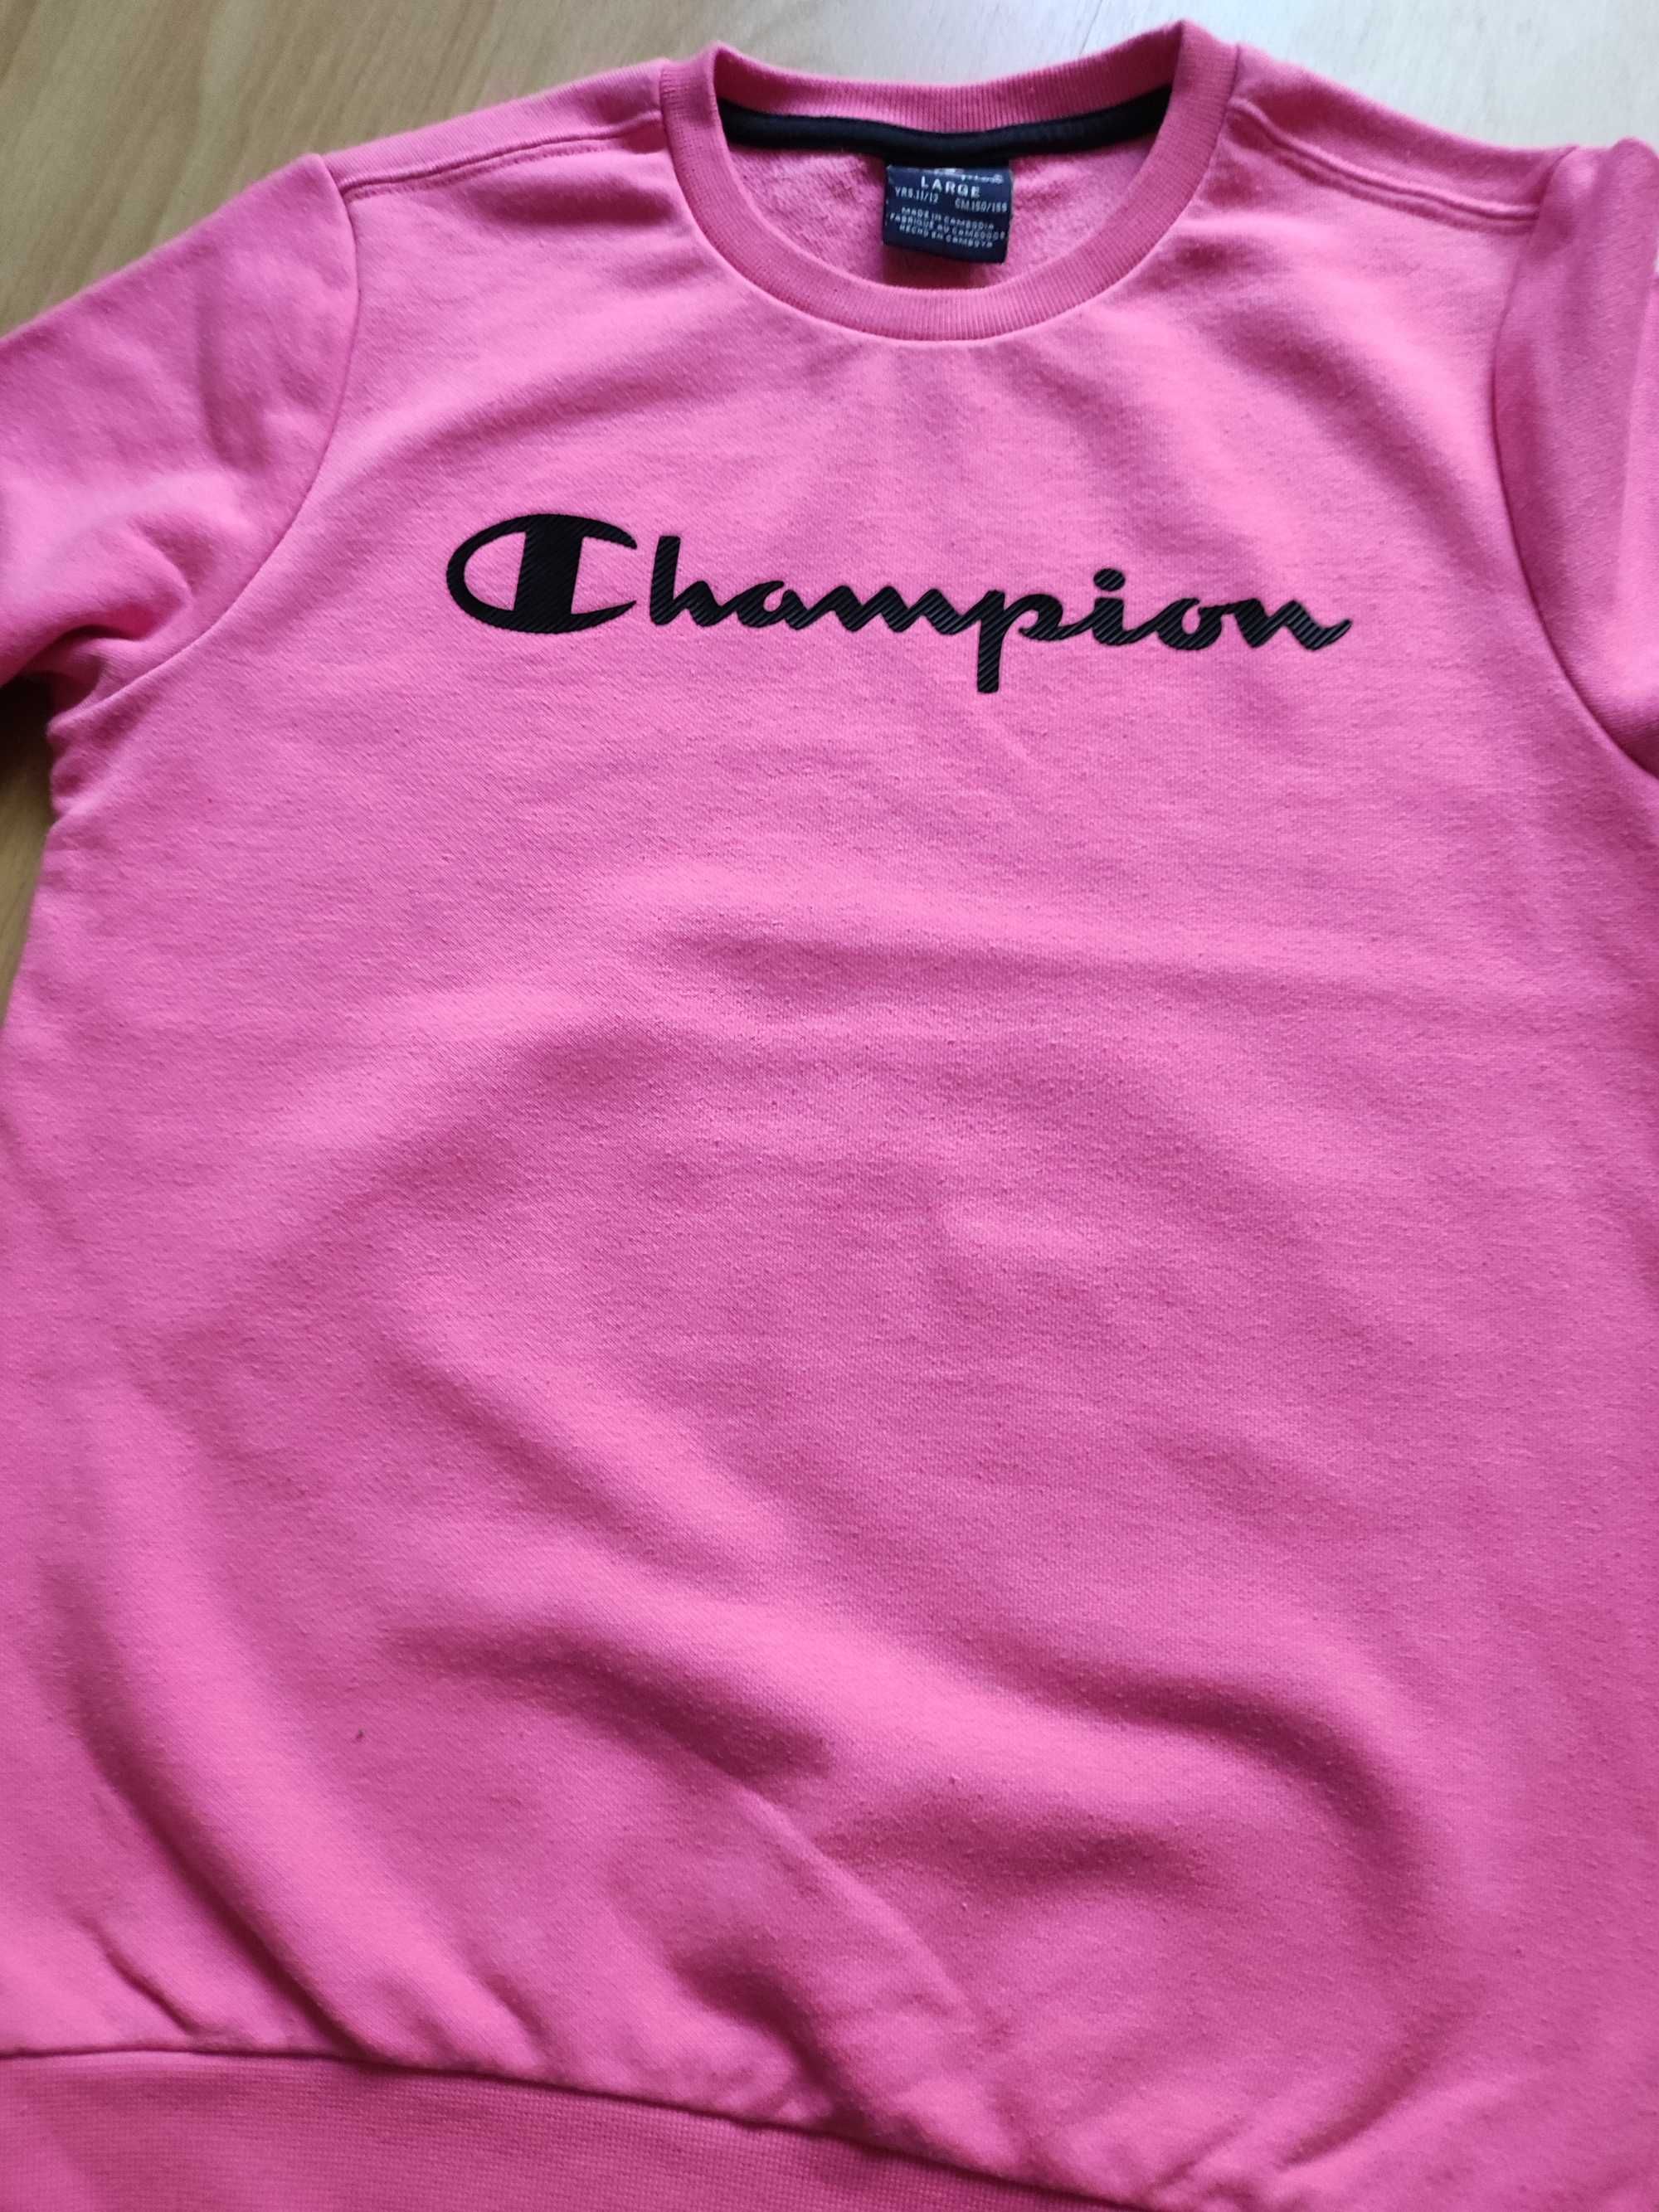 Bluza Champion mlodziezowa